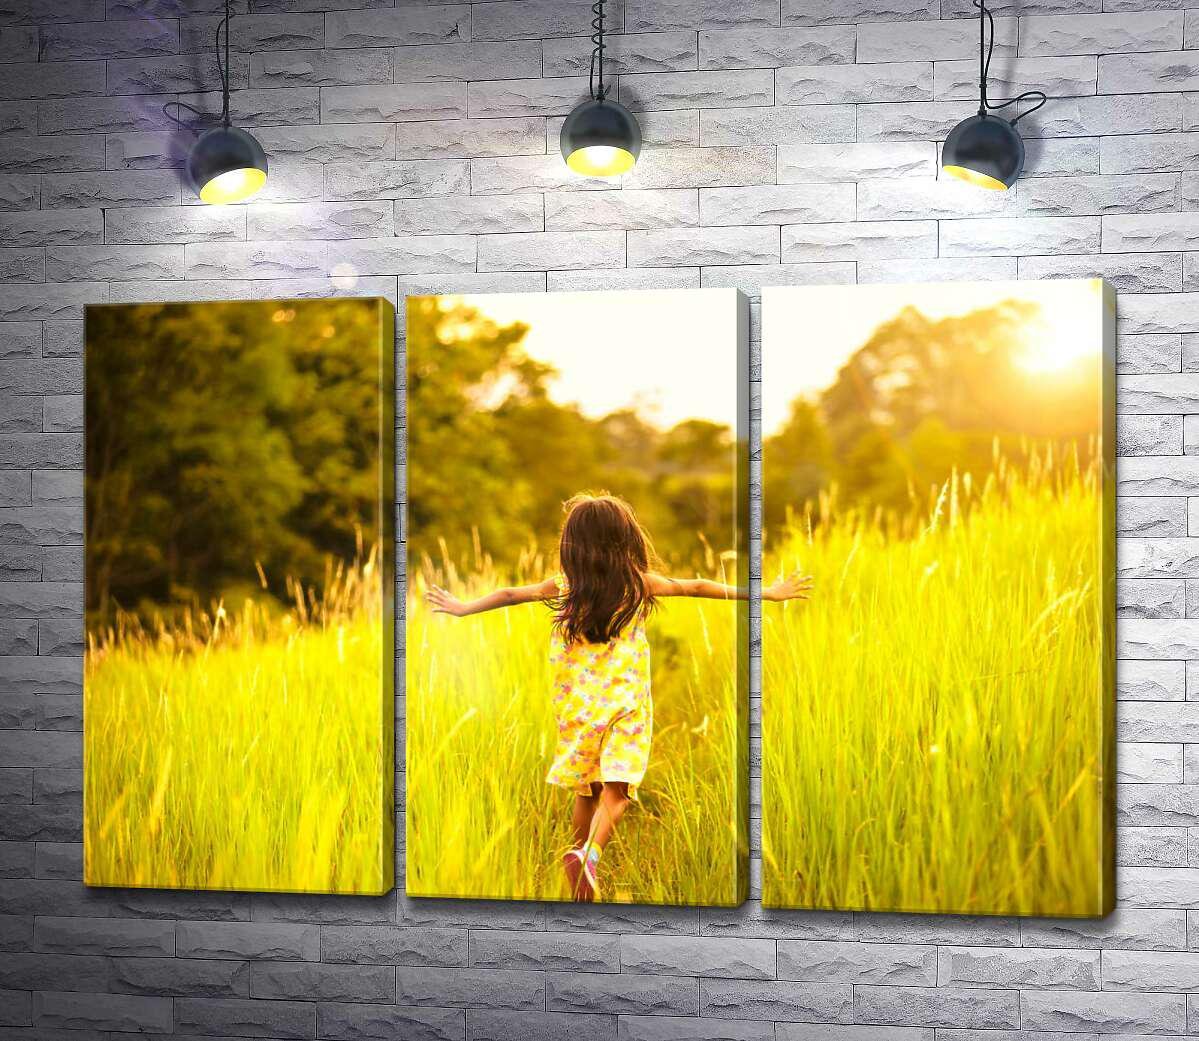 Модульная картина ArtPoster Девочка бегает среди высокой травы 132x87 см Модуль №11 (002589)